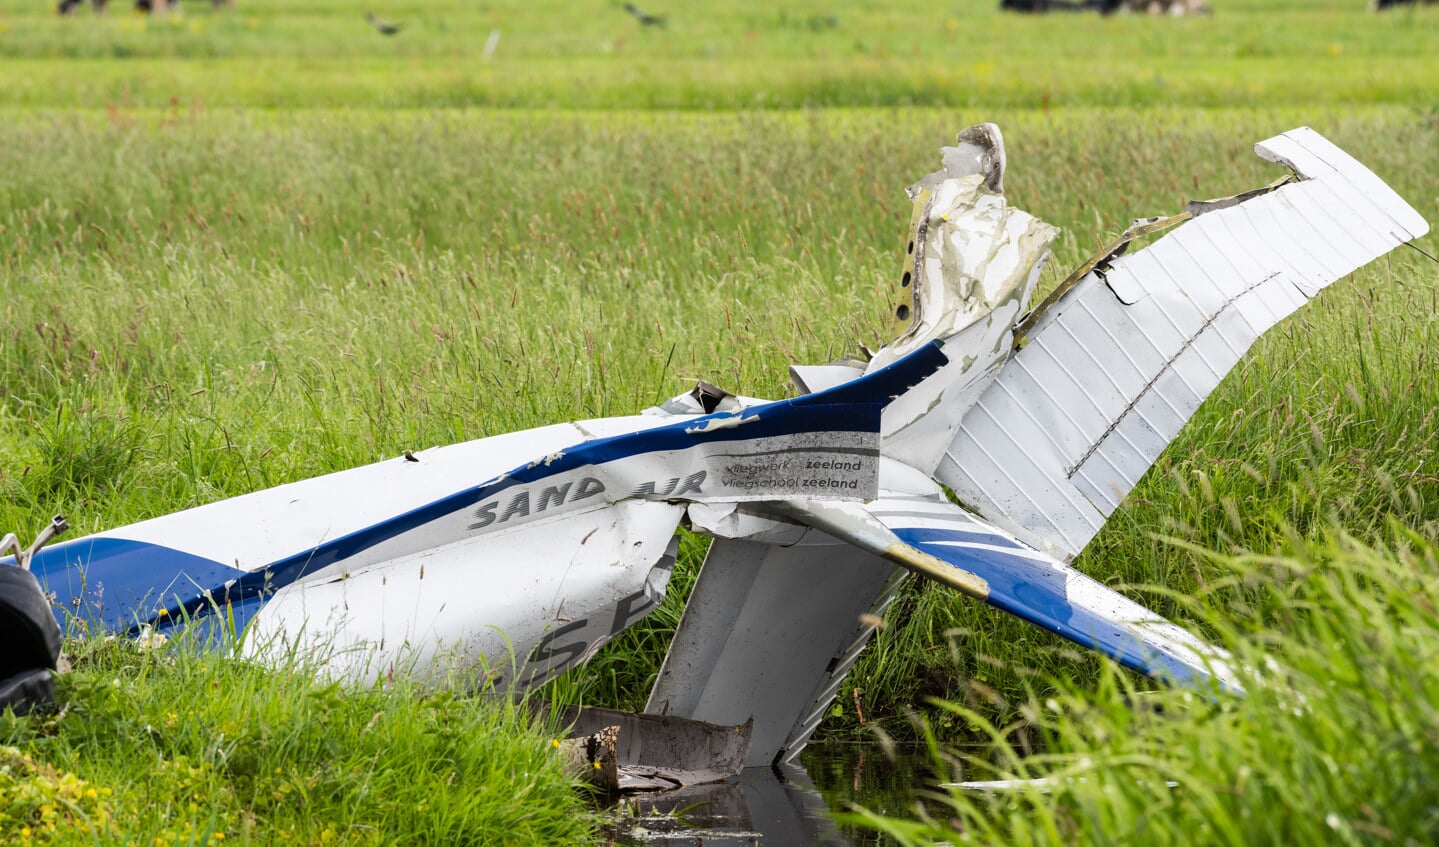 • De romp van het neergestorte sportvliegtuig ligt in een sloot. Wrakstukken liggen verspreid over een gebied van circa 300 meter.